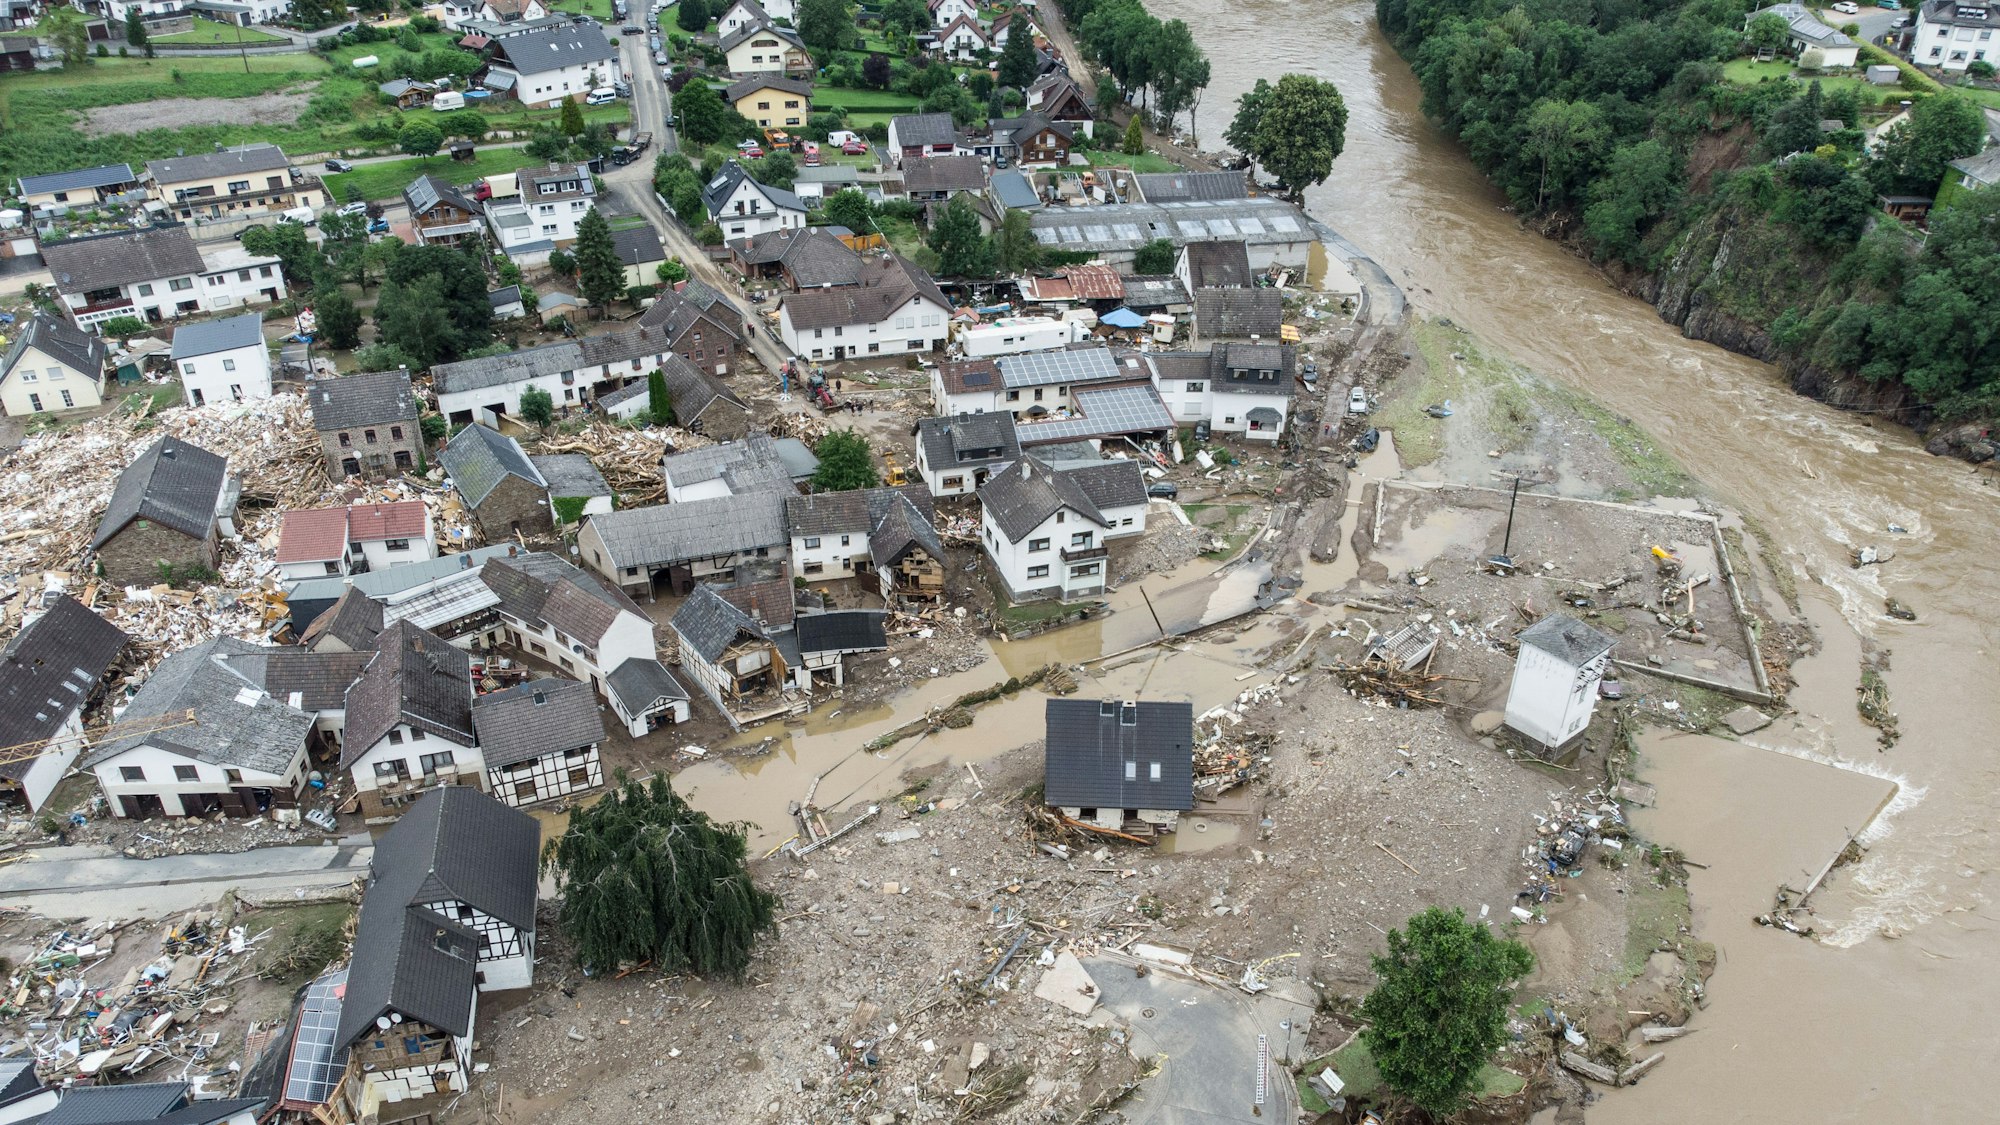 Weitgehend zerstört und überflutet ist das Dorf Schuld im Kreis Ahrweiler nach dem Unwetter mit Hochwasser. Jetzt wird gegen LandratJürgen Pföhler ermittelt.